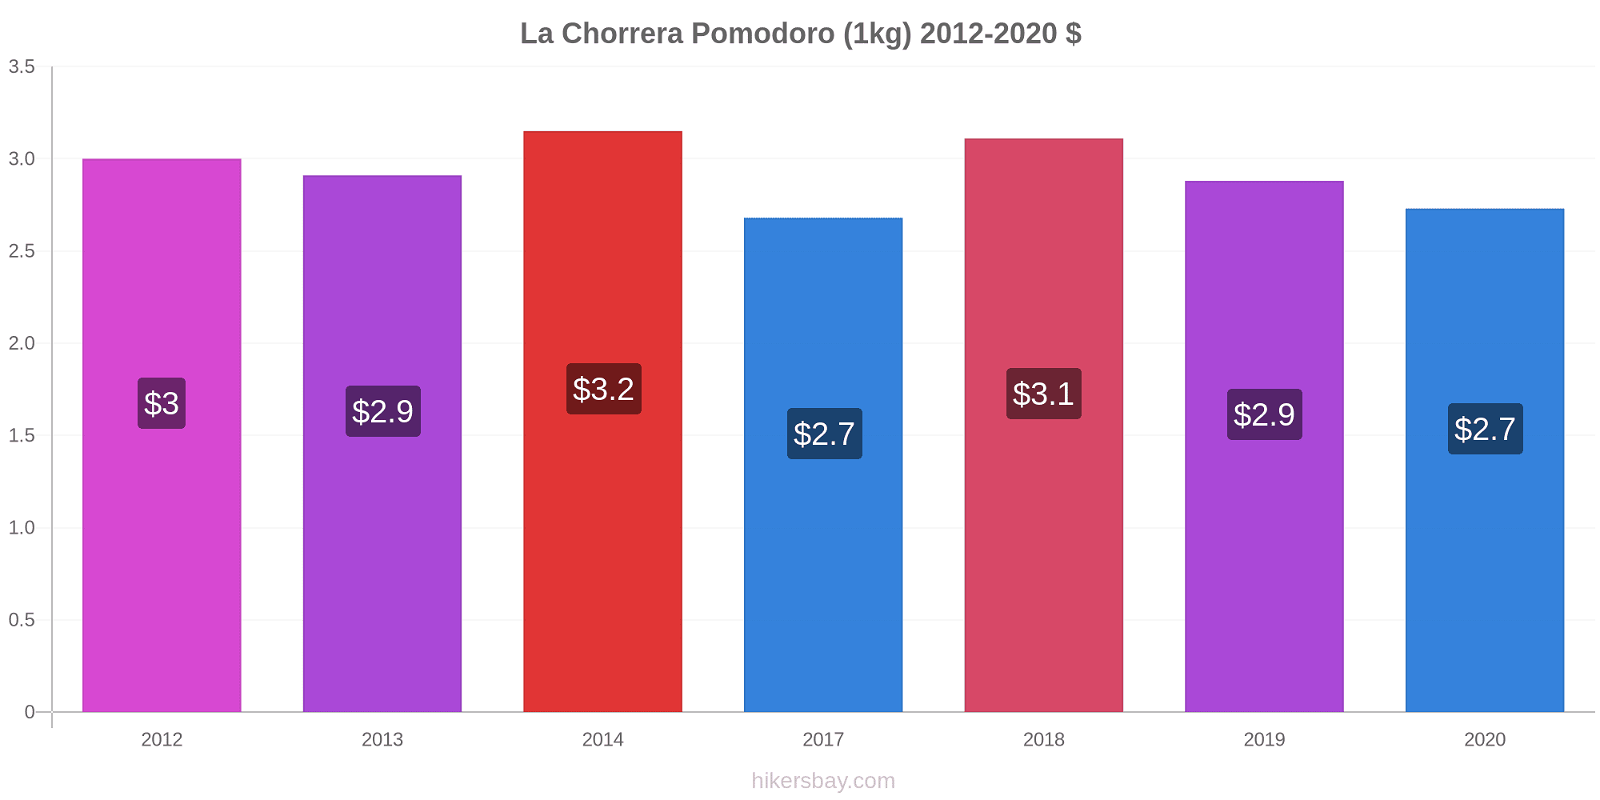 La Chorrera variazioni di prezzo Pomodoro (1kg) hikersbay.com